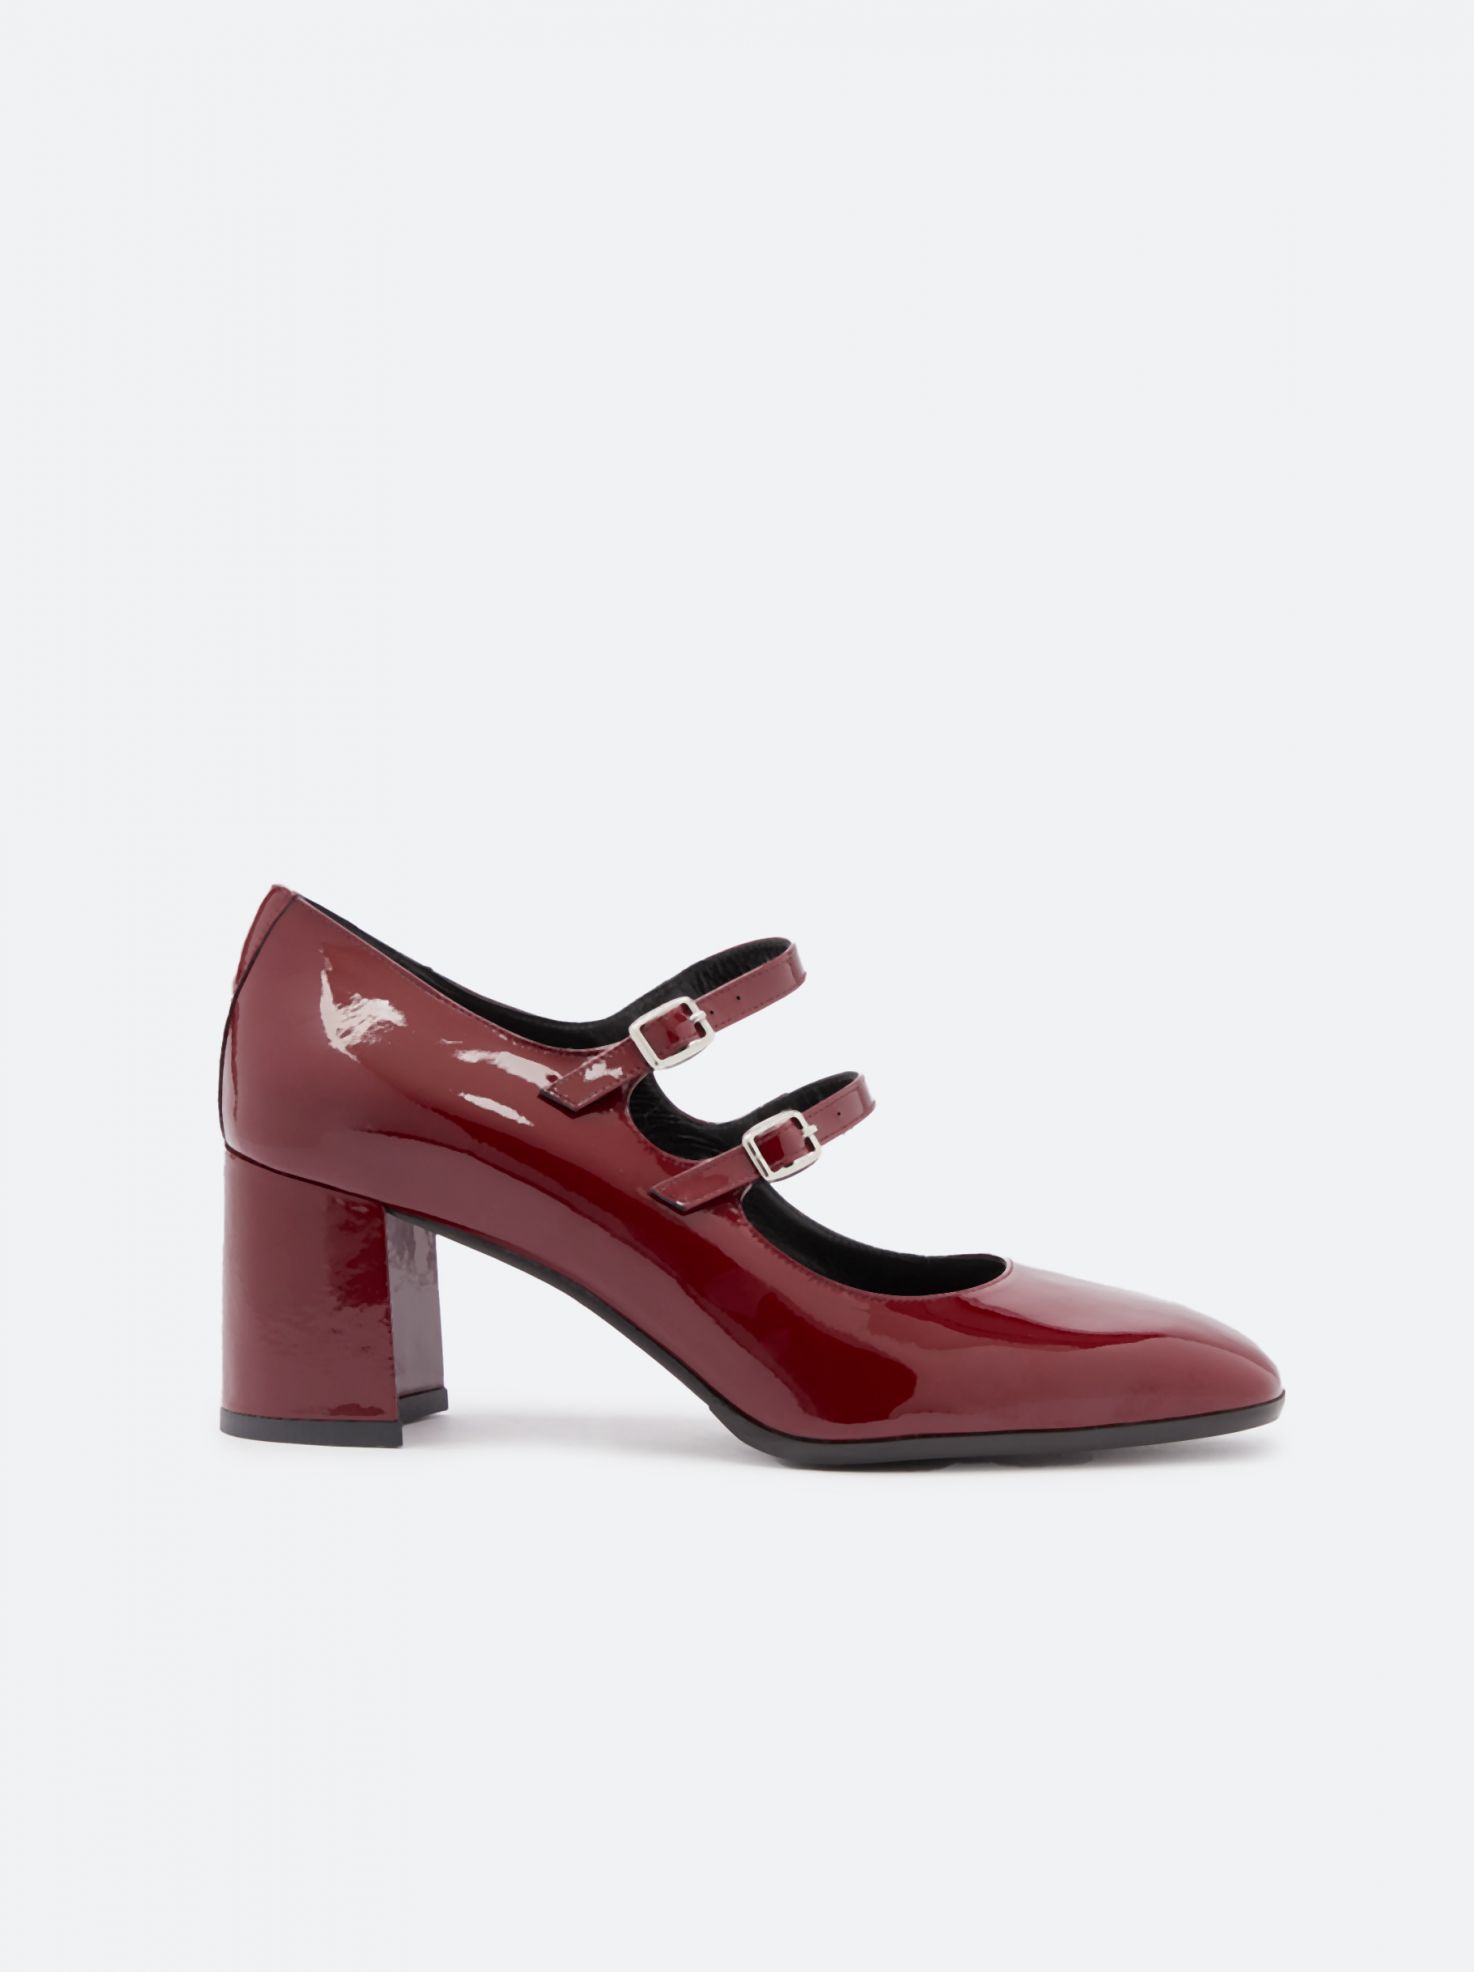 Carel Paris | Women Shoes |Official Store